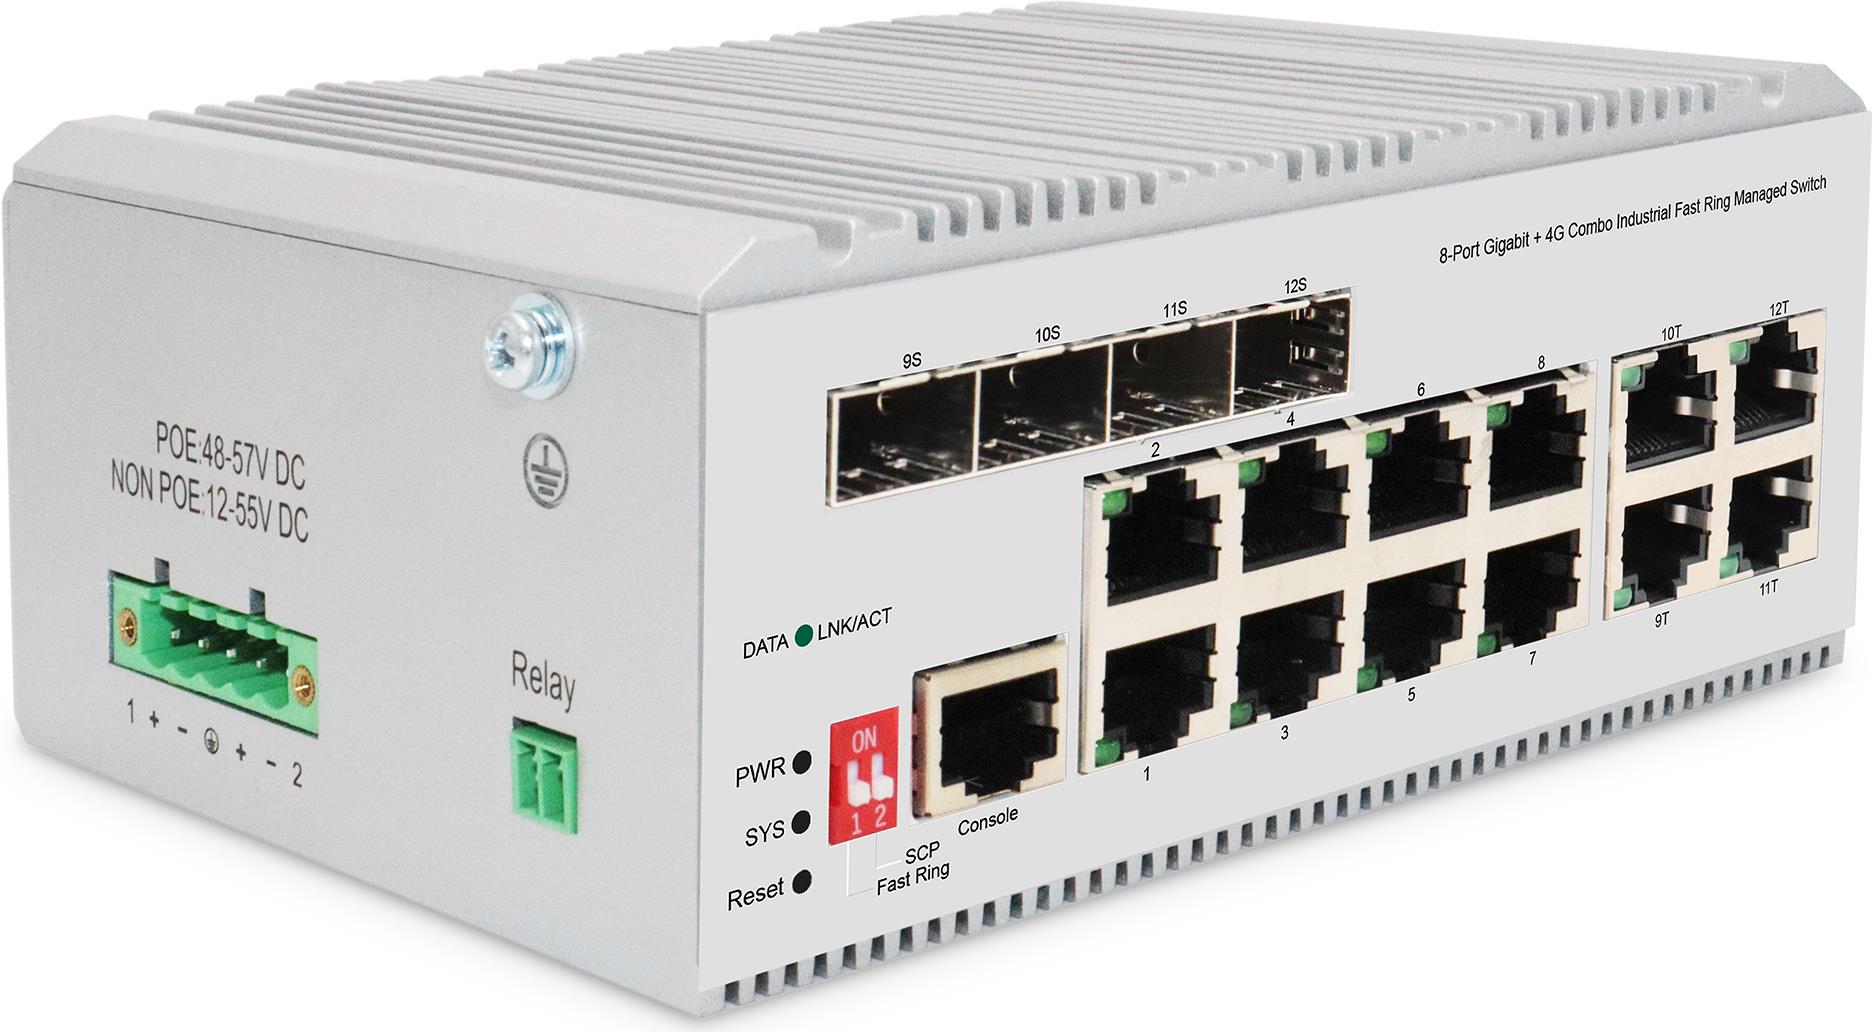 Digitus 8 Port Gigabit Ethernet Netzwerk Switch, Industrial, L2 managed, 4 SFP Uplink. Switch-Typ: Managed, Switch-Ebene: L2. Basic Switching RJ-45 Ethernet Ports-Typ: Gigabit Ethernet (10/100/1000), Anzahl der basisschaltenden RJ-45 Ethernet Ports: 8, Konsolen-Port: RJ-45. Vollduplex. MAC-Adressentabelle: 8000 Eintragungen, Routing-/Switching-Kapazität: 24 Gbit/s. Netzstandard: IEEE 802.3, IEEE 802.3ab, IEEE 802.3u, IEEE 802.3x, IEEE 802.3z. DC input Spannung: 12 - 55 V (DN-651145)